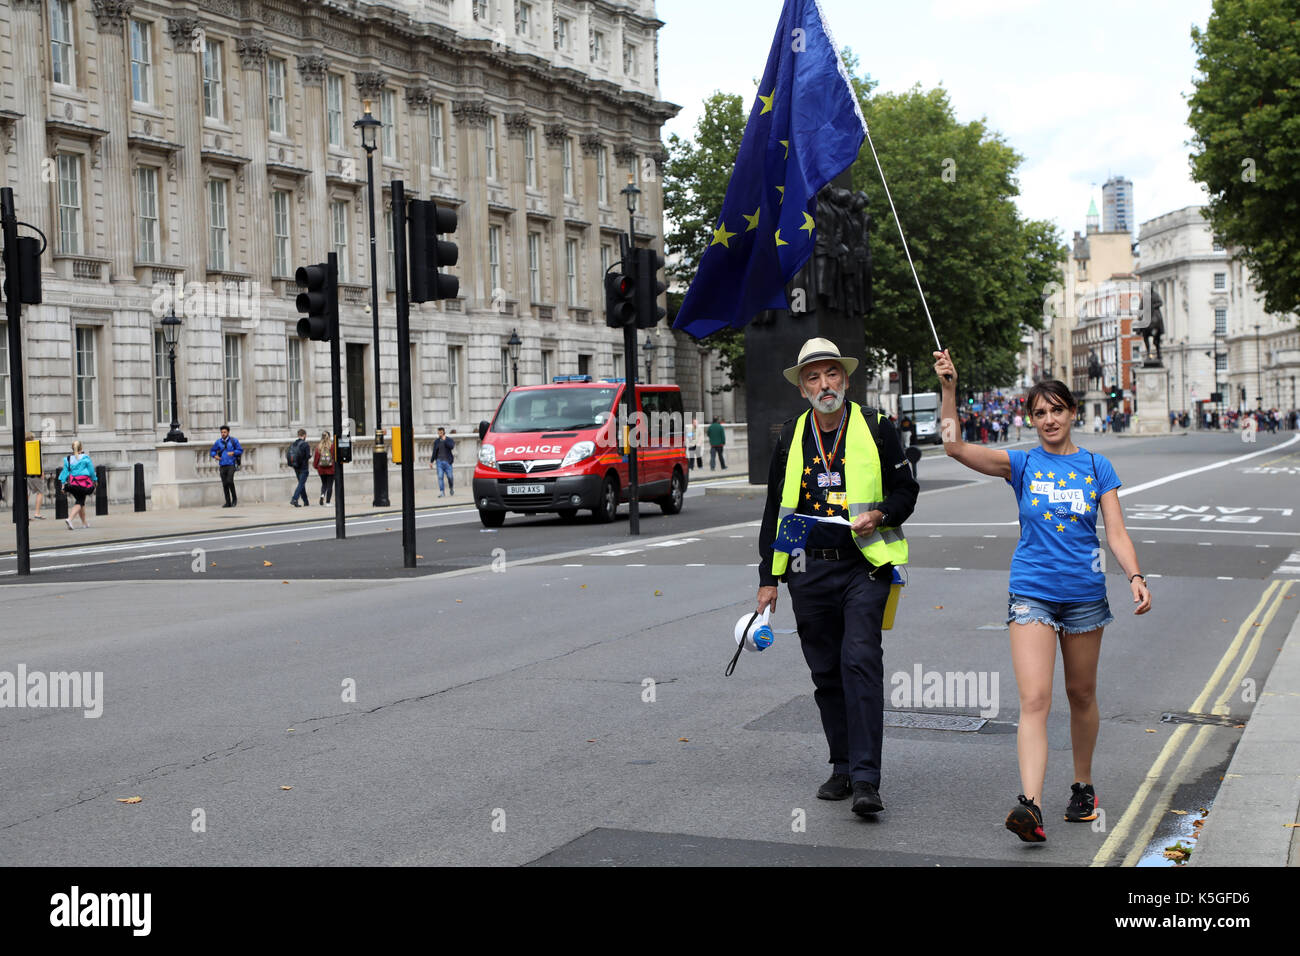 Londres, Reino Unido. 9de septiembre, 2017. Dos manifestantes pro-Ue marzo Whitehall, en el centro de Londres, justo delante del pueblo de marzo para Europa, el 9 de septiembre de 2017 Crédito: Dominic Dudley/Alamy Live News Foto de stock